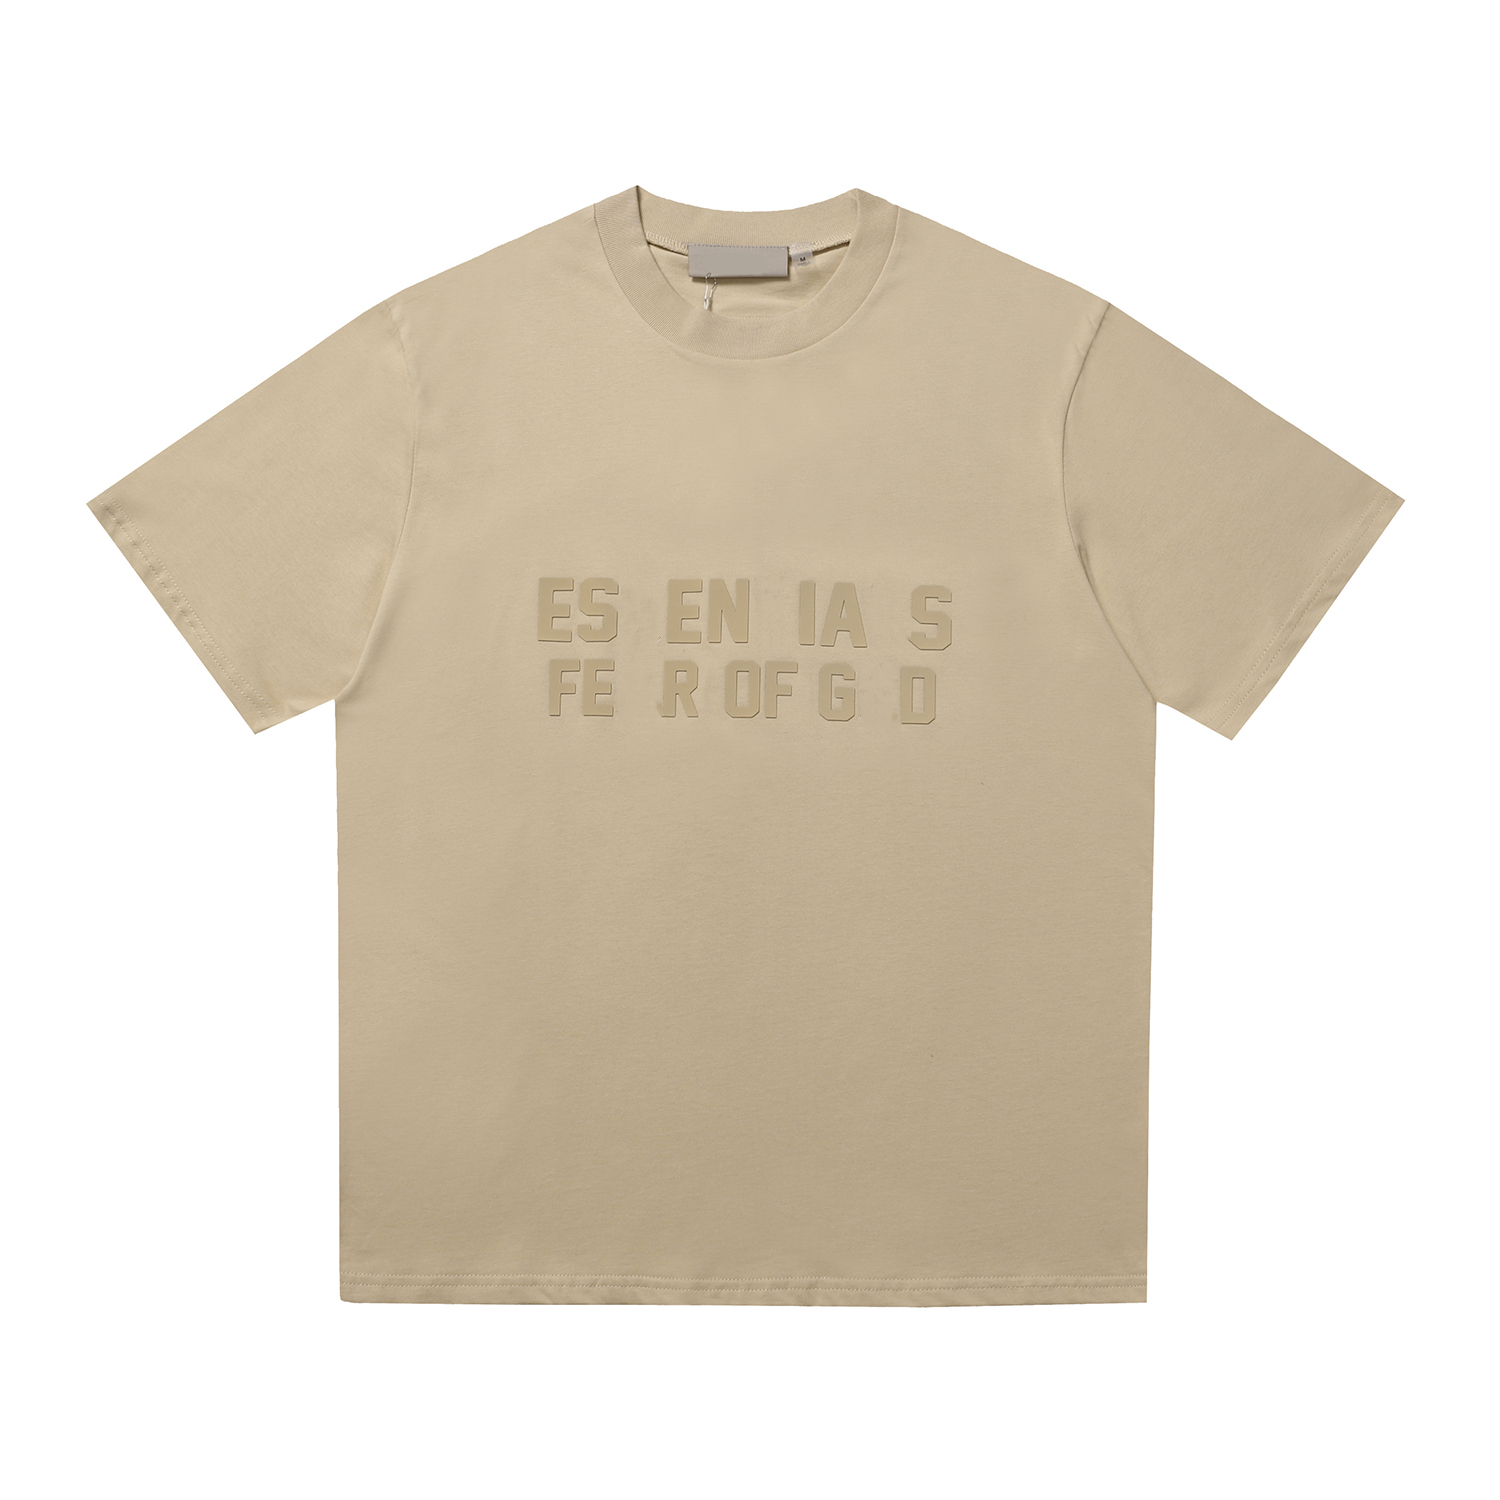 Essentialsweatshirts Partager Jouer Mode Hommes T-shirts Designer Chemise Casual Tshirt Coton Broderie À Manches Courtes T-shirt D'été 584